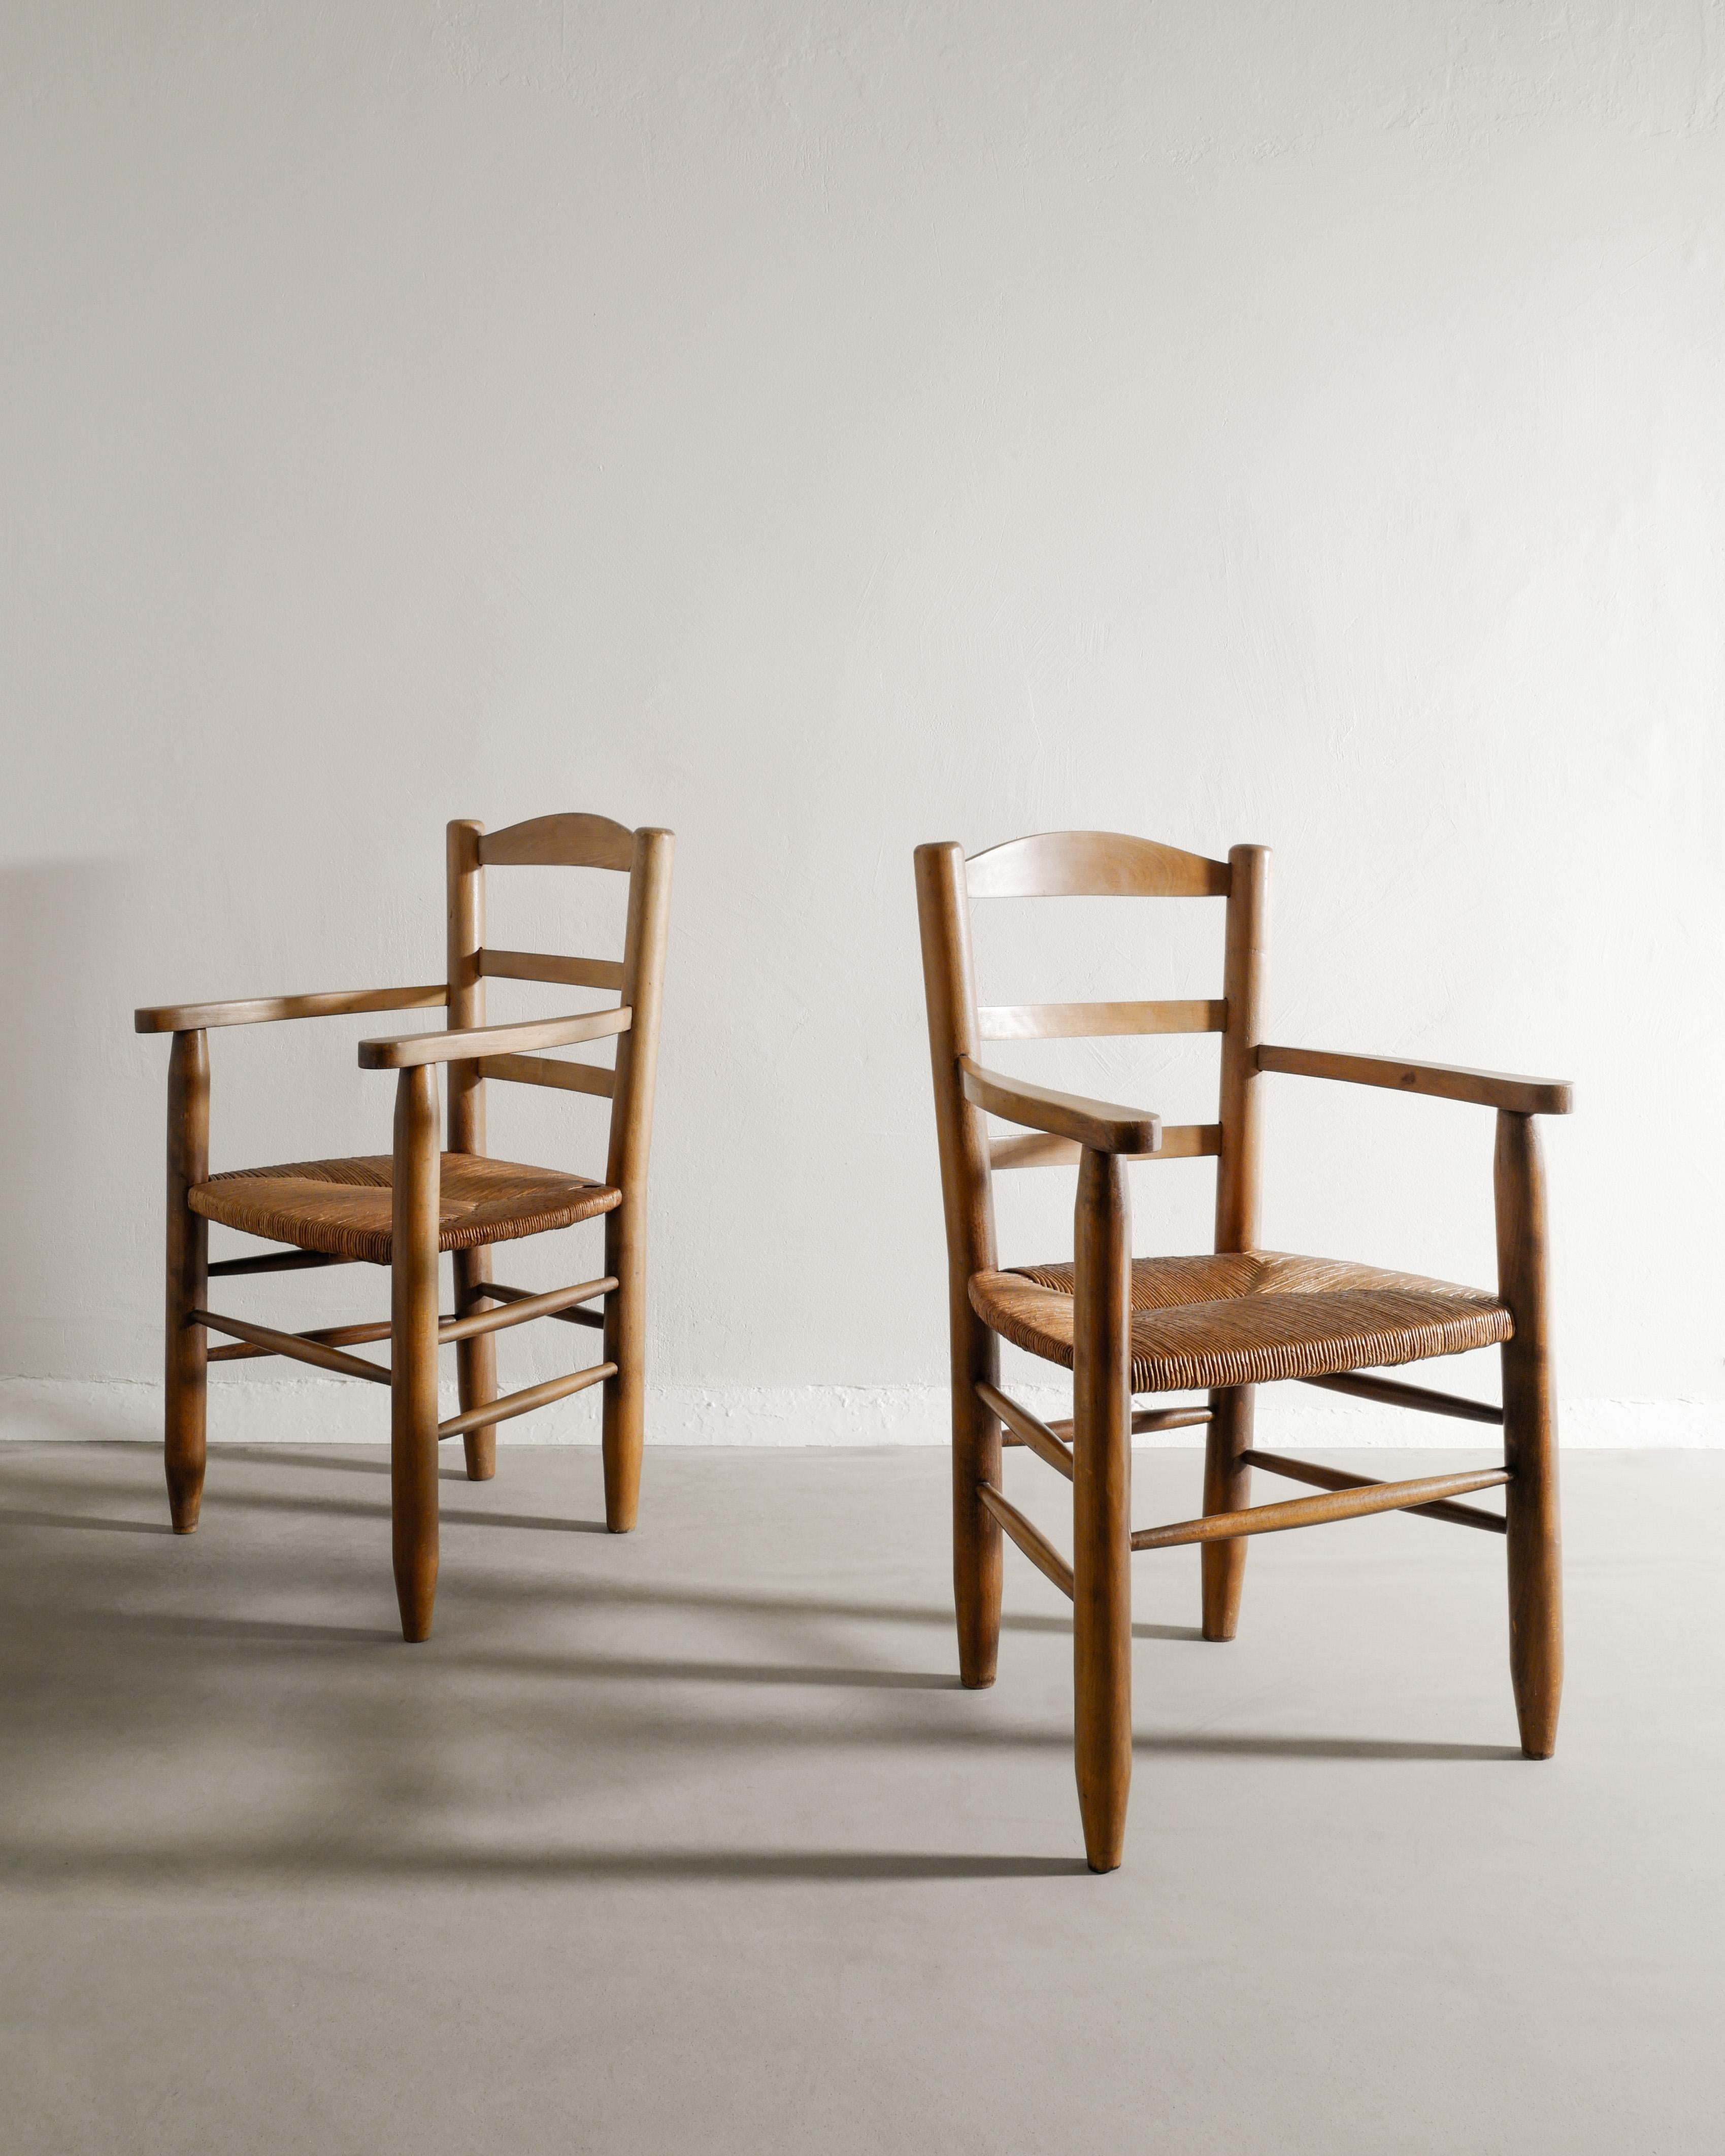 Rare paire de fauteuils en bois du milieu du siècle dans le style de Charlotte Perriand. Fabriqué en France, les années 1950 en bois d'orme et les sièges en paille assortis. En bon état d'origine. 

Dimensions : H : 90 cm / 35.45